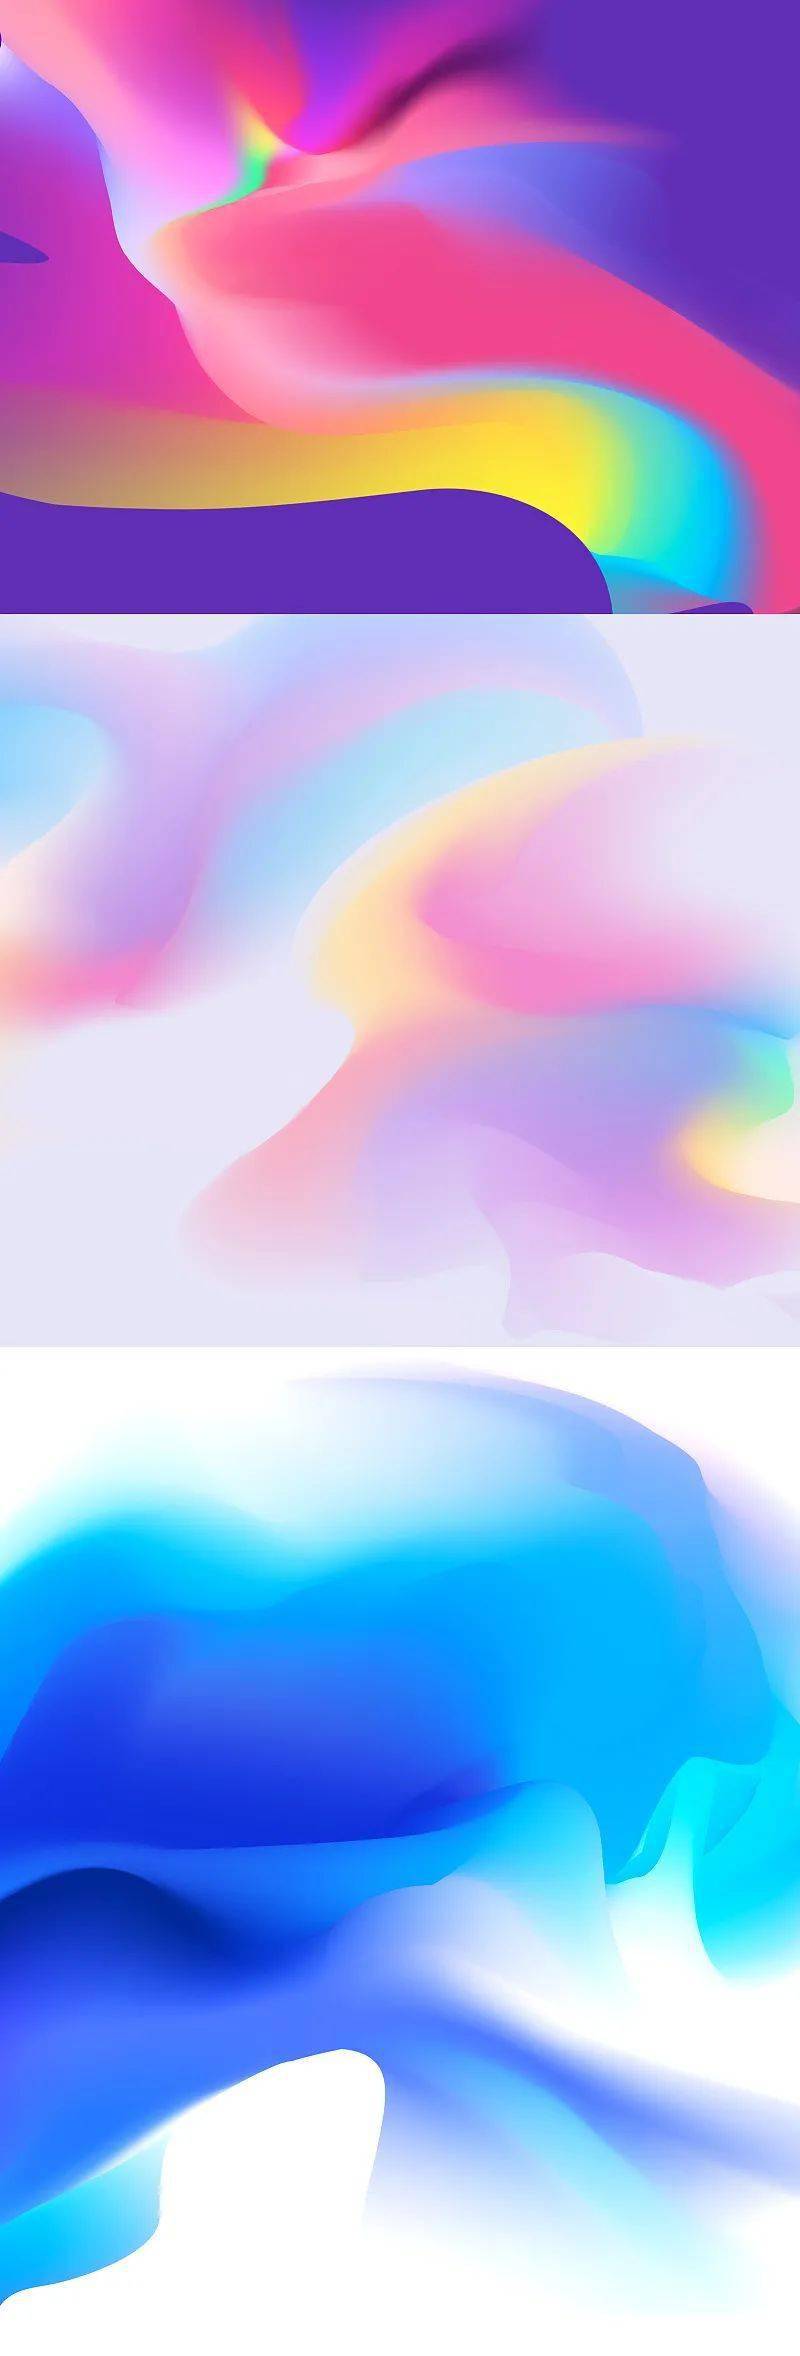 很cool的颜色渐变技术 Iphone的壁纸 其实你也可以做出来 迷彩